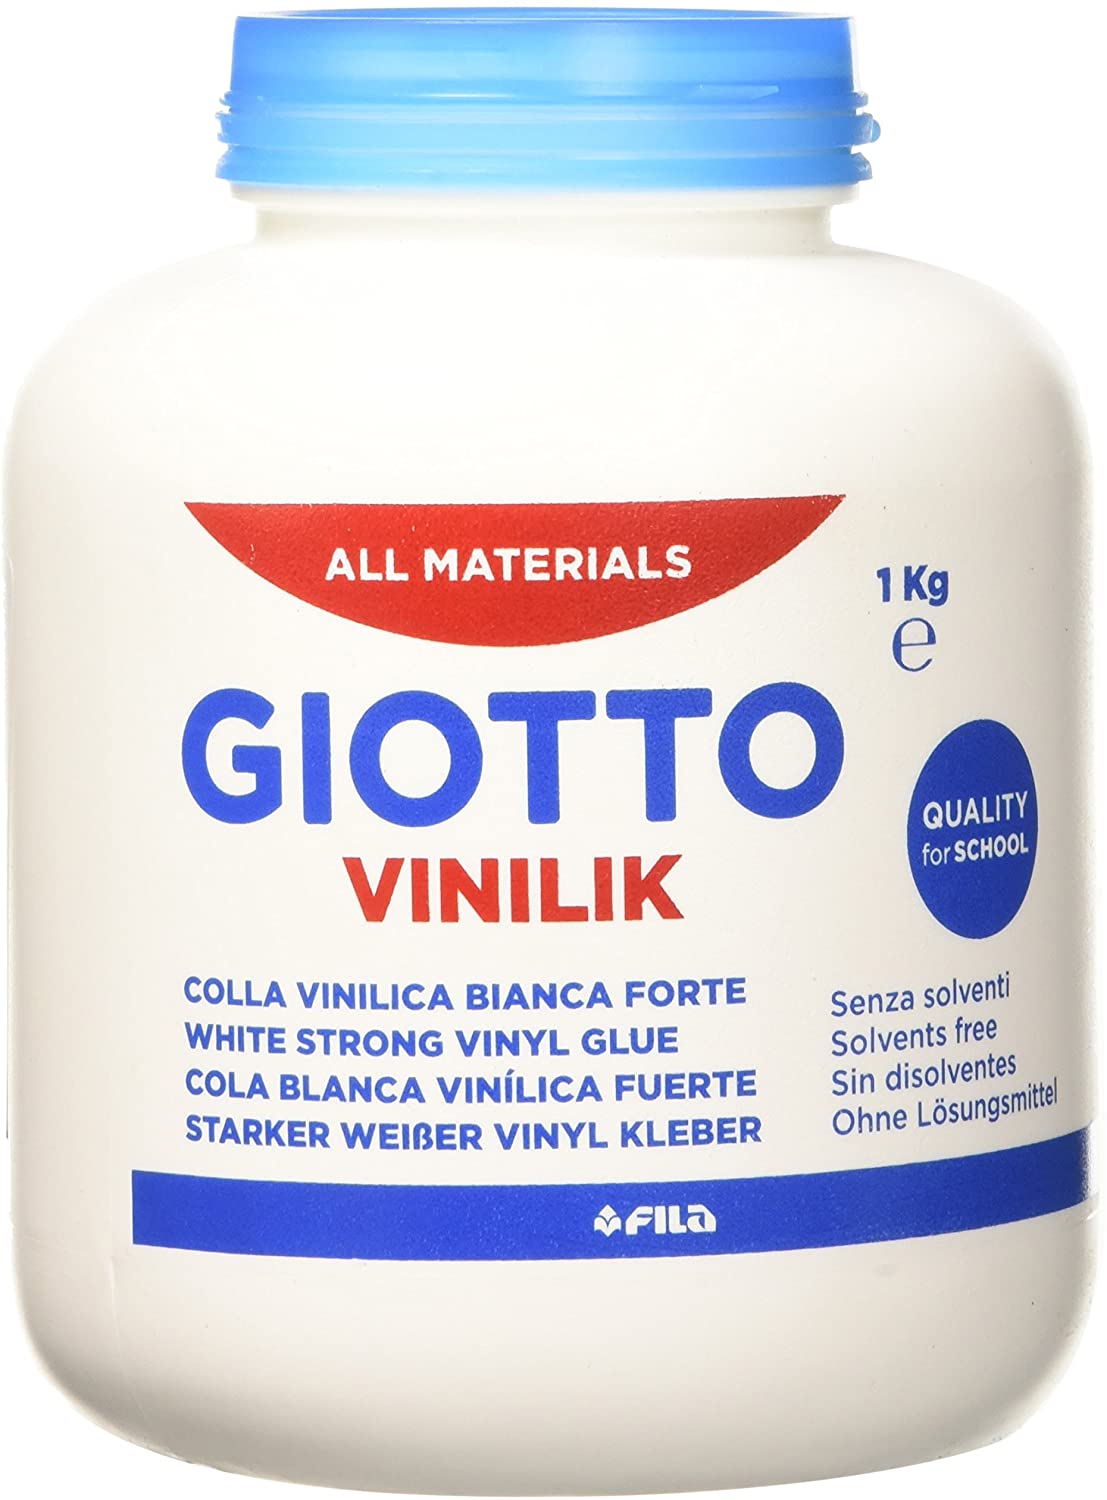 Giotto Vinilik Barattolo 1kg